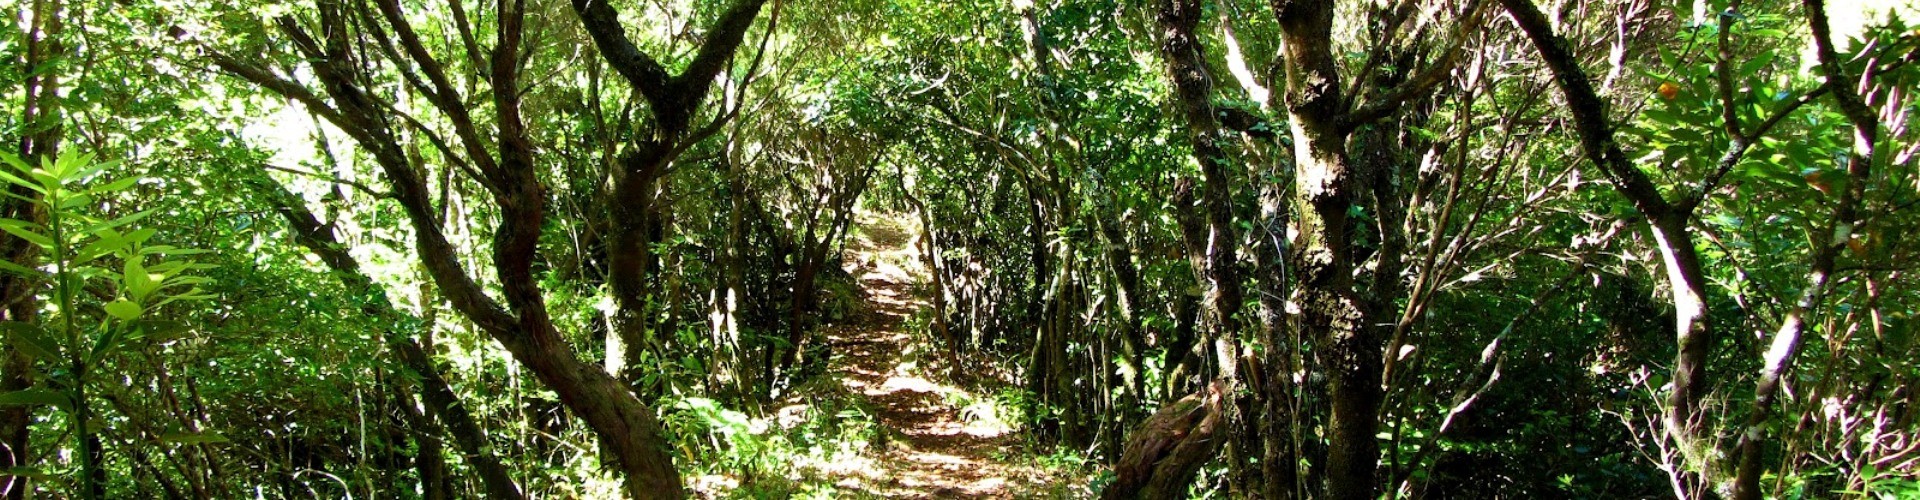 PR22 Vereda do Chao dos Louros Hiking Trail, Madeira